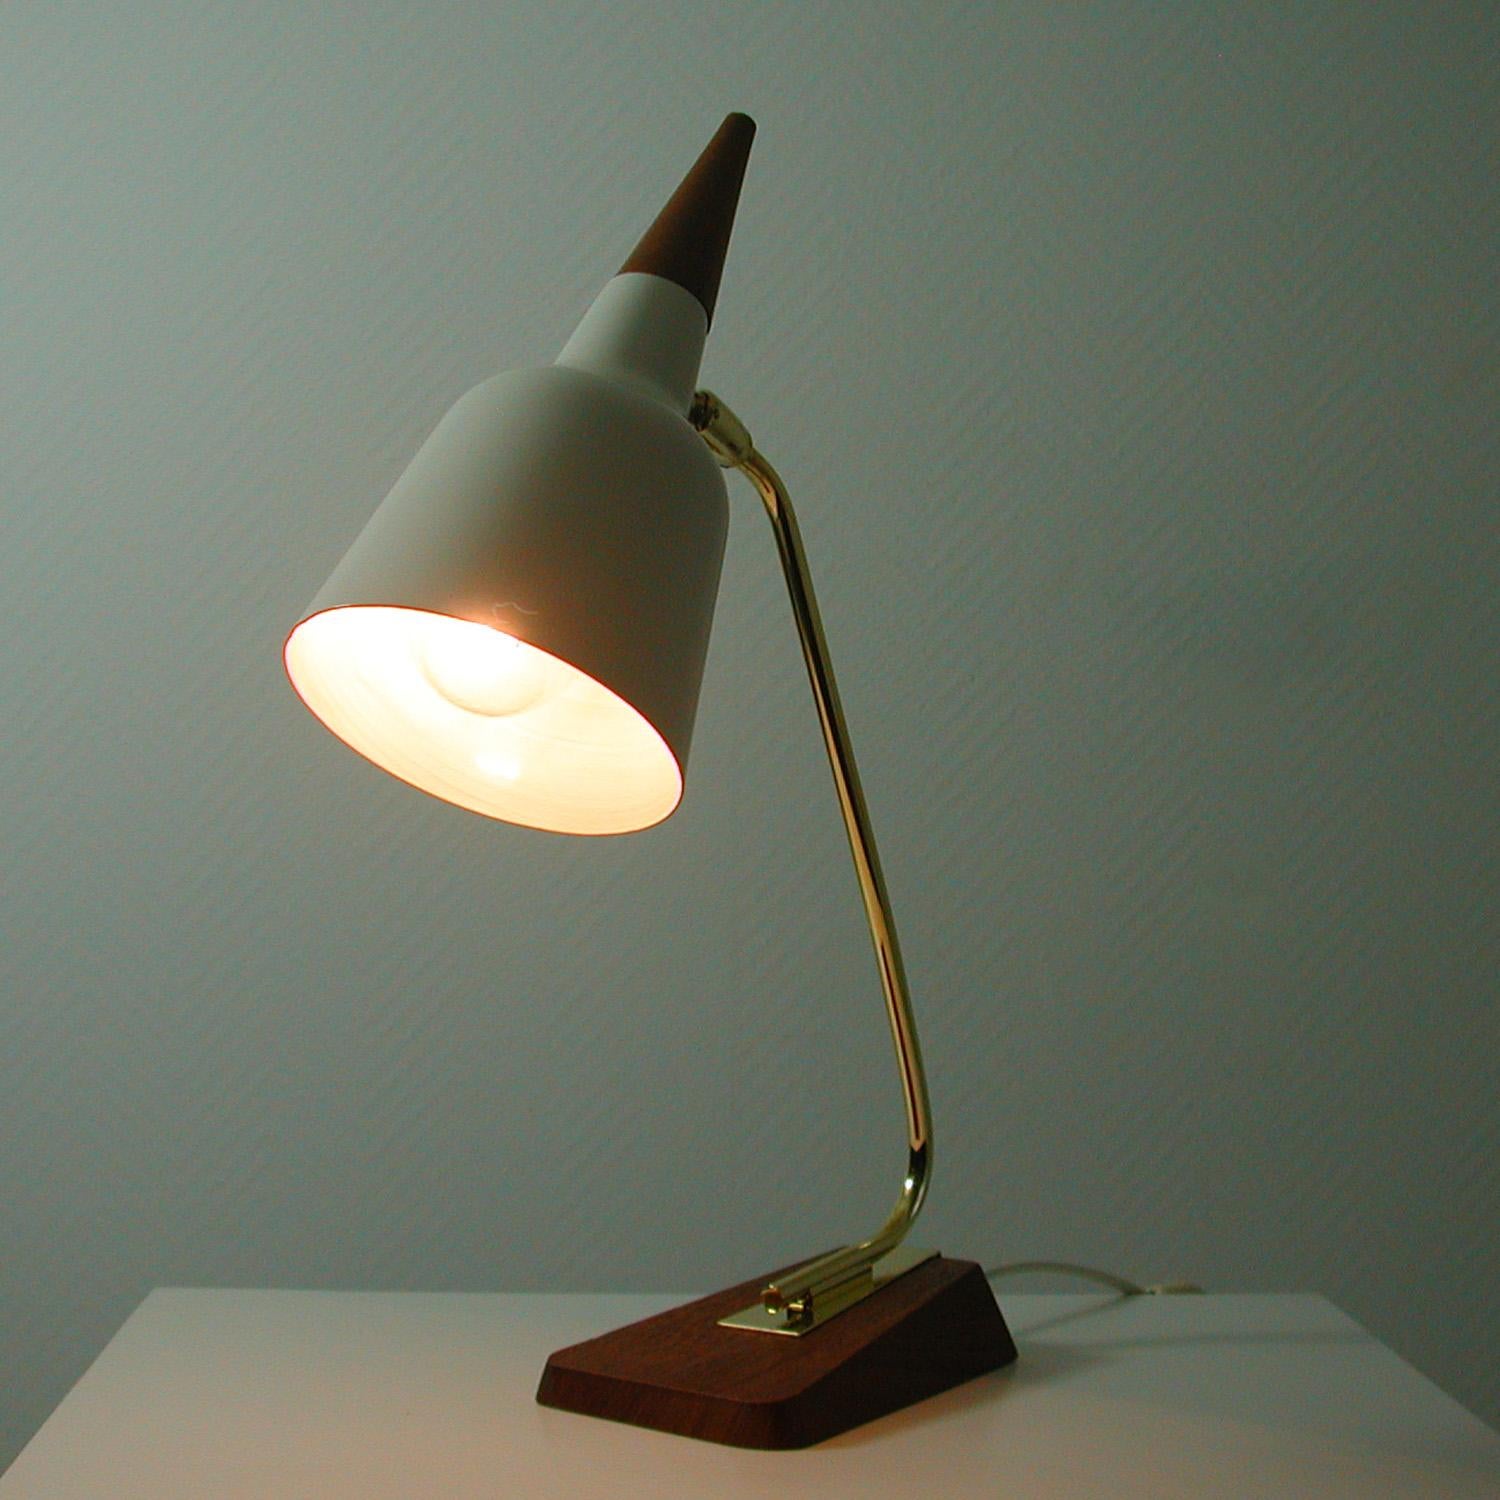 Midcentury German Teak and Brass Table Desk Lamp by Kaiser Leuchten, 1950s For Sale 4